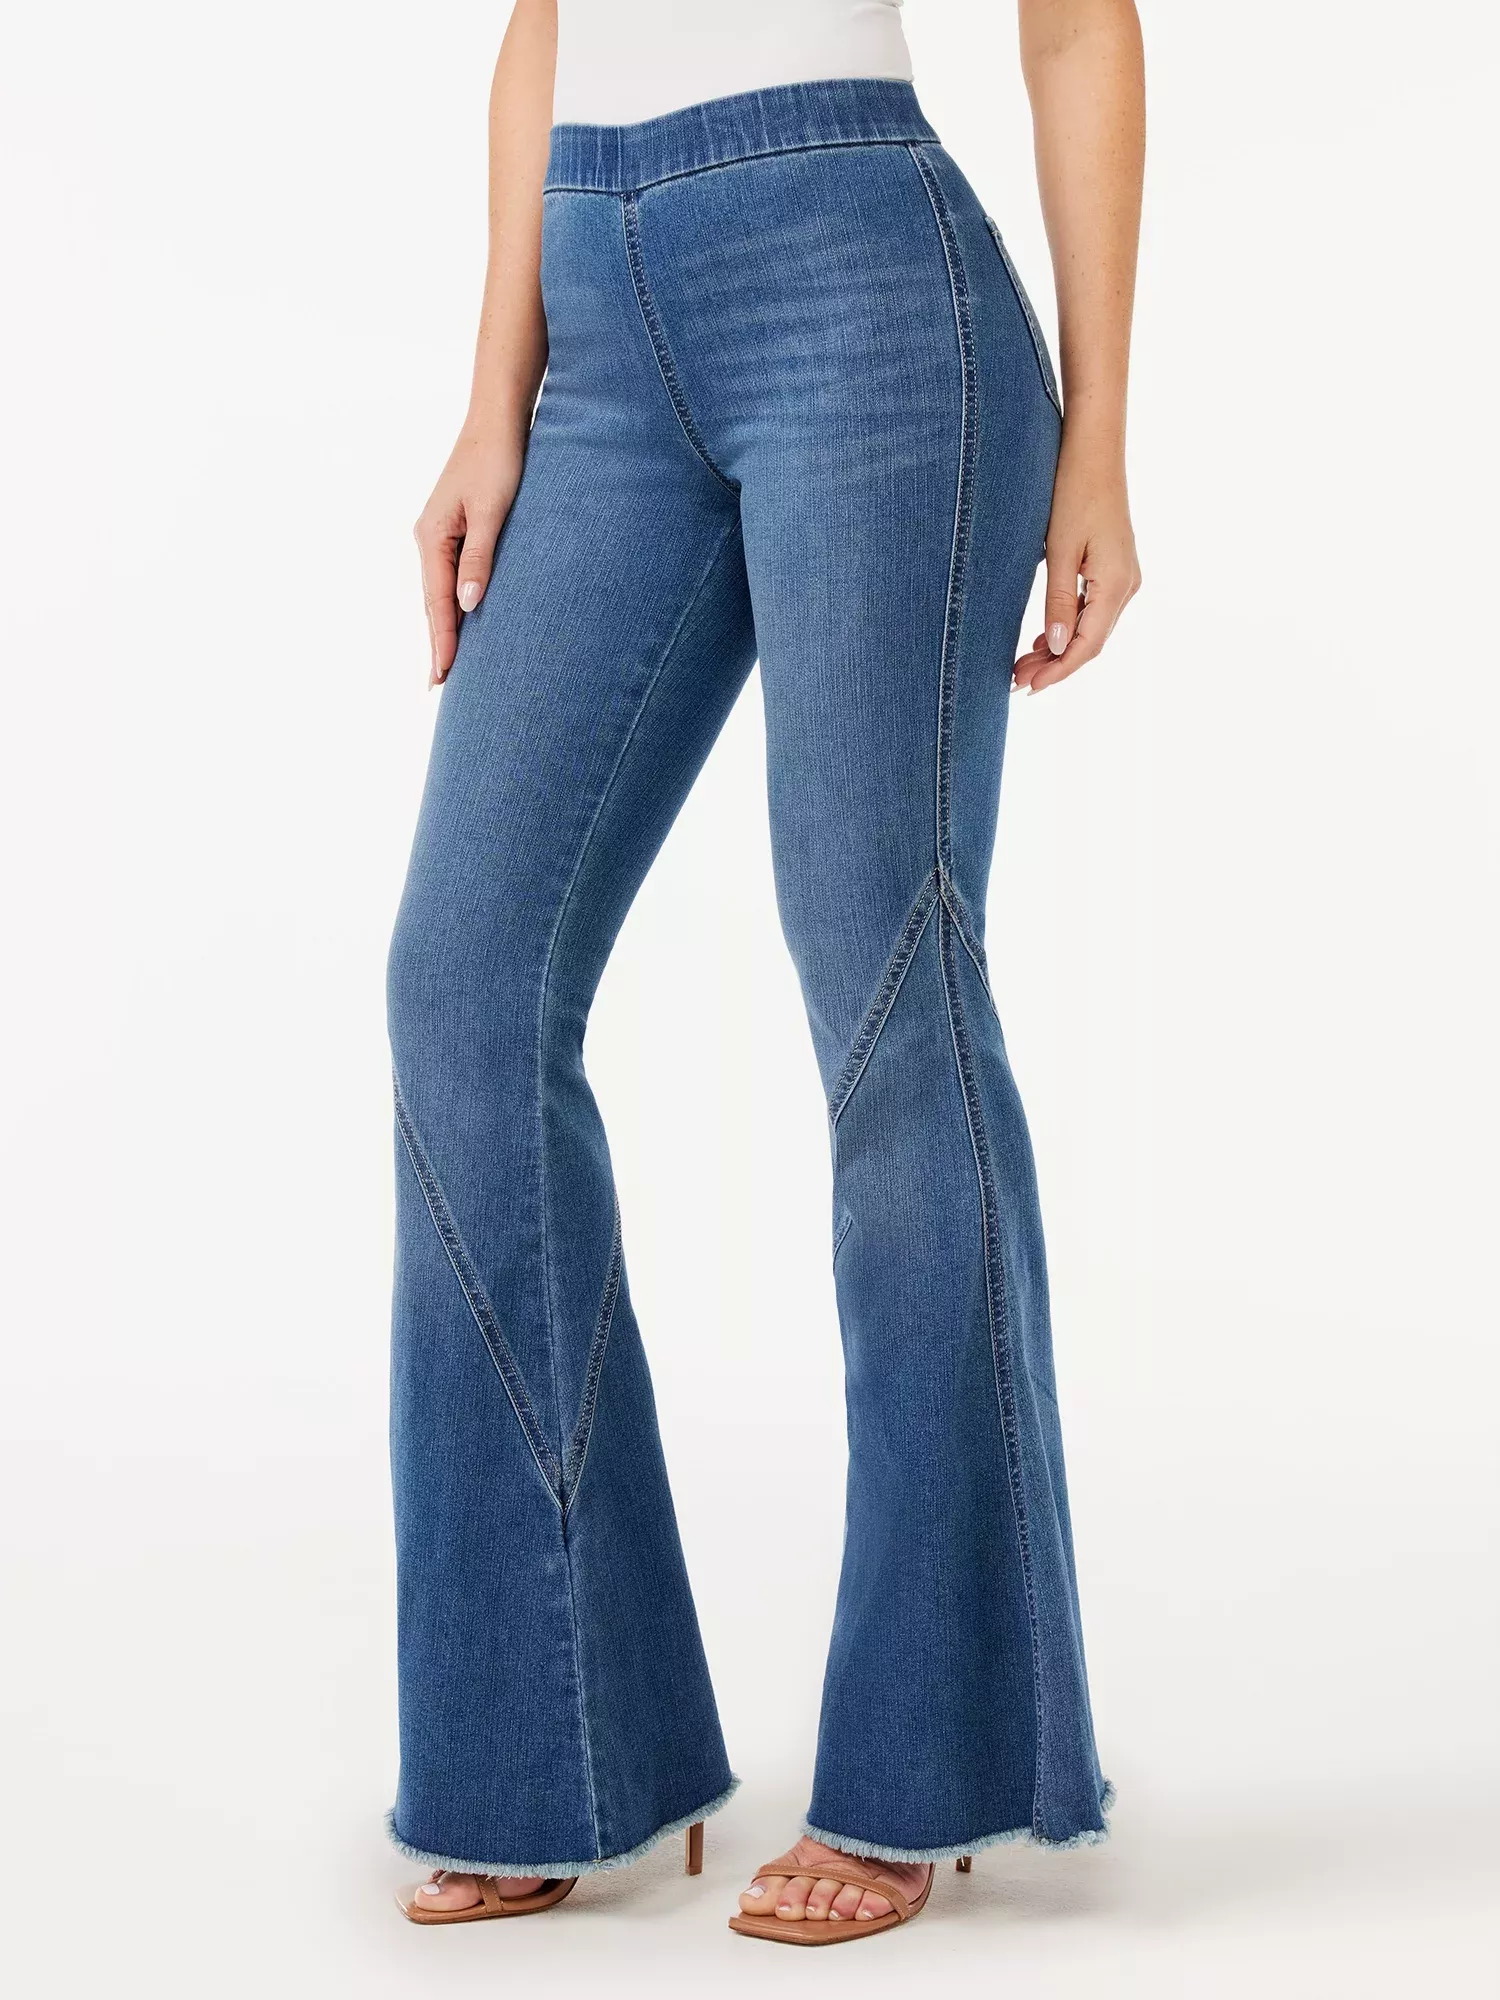 Sofia Jeans by Sofia Vergara - Sofia Jeans Melisa Flare High Waist